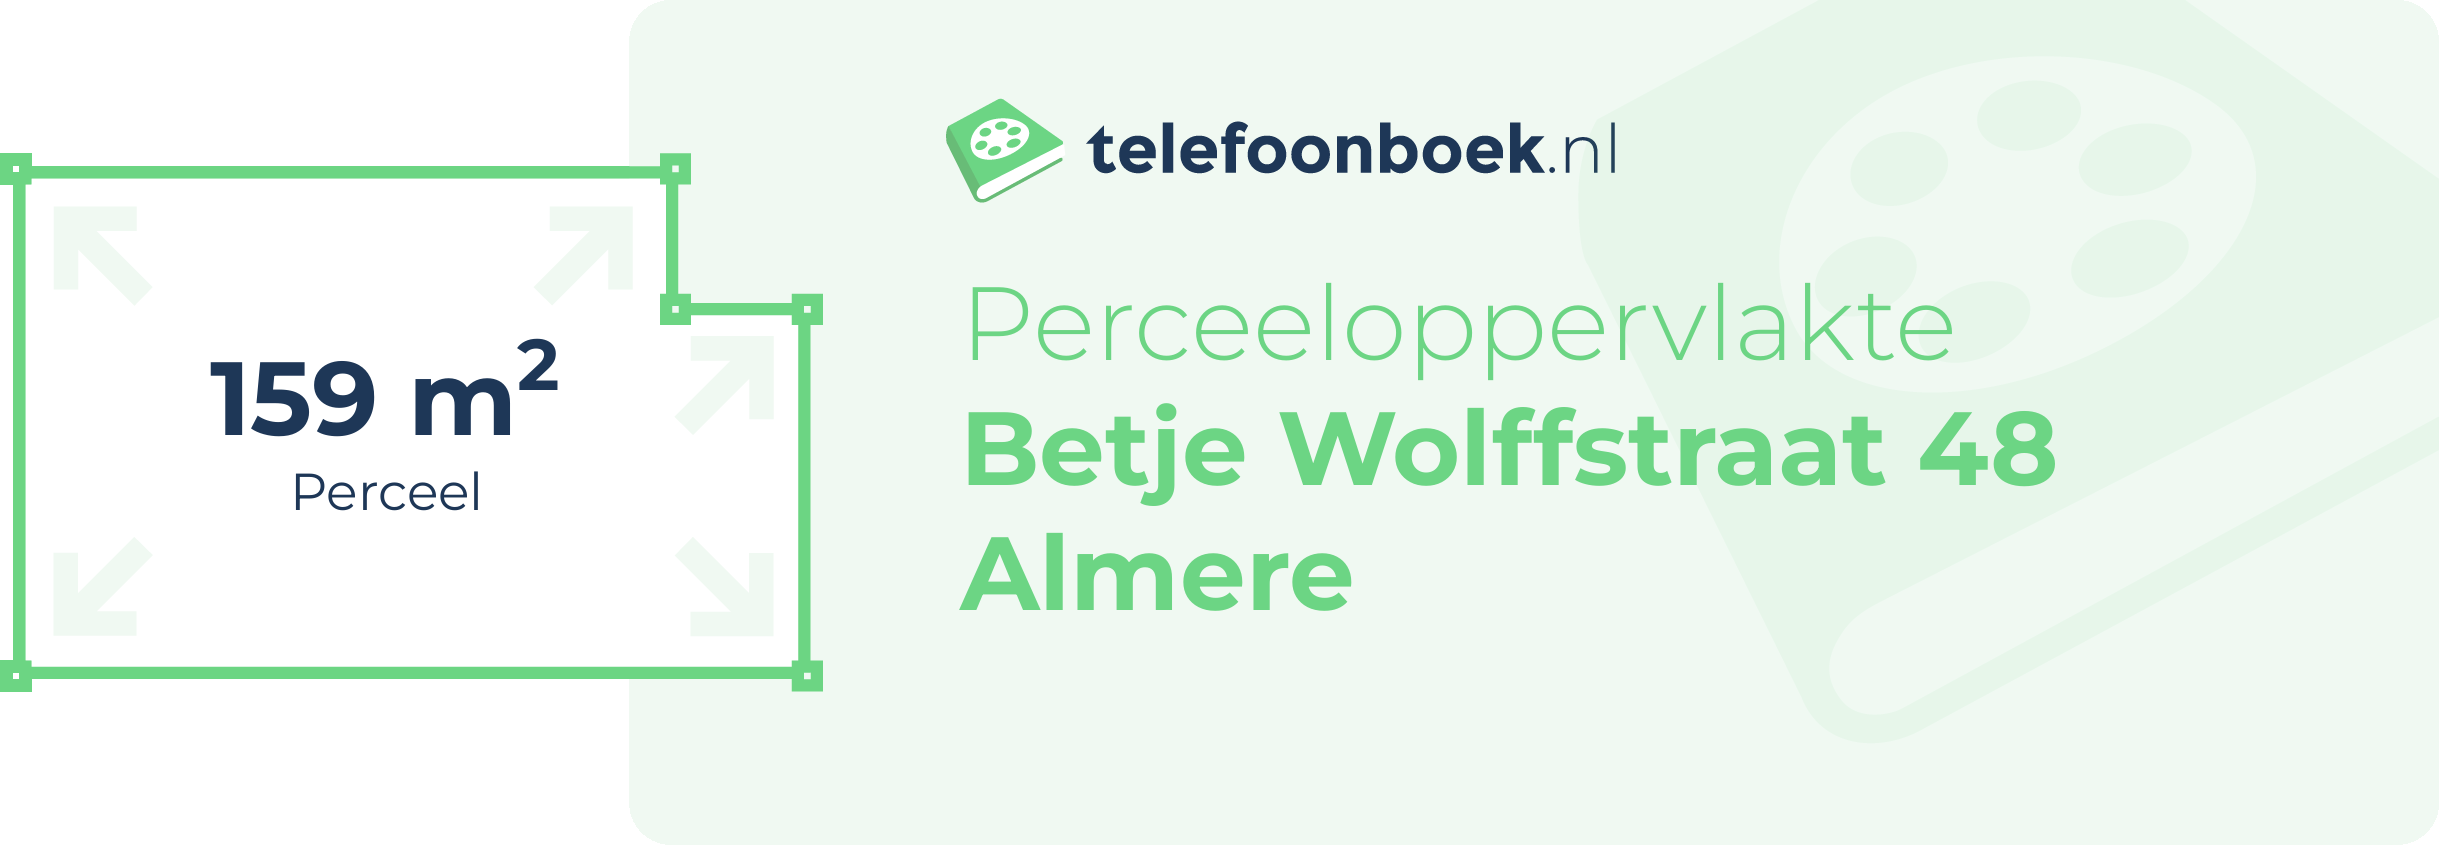 Perceeloppervlakte Betje Wolffstraat 48 Almere